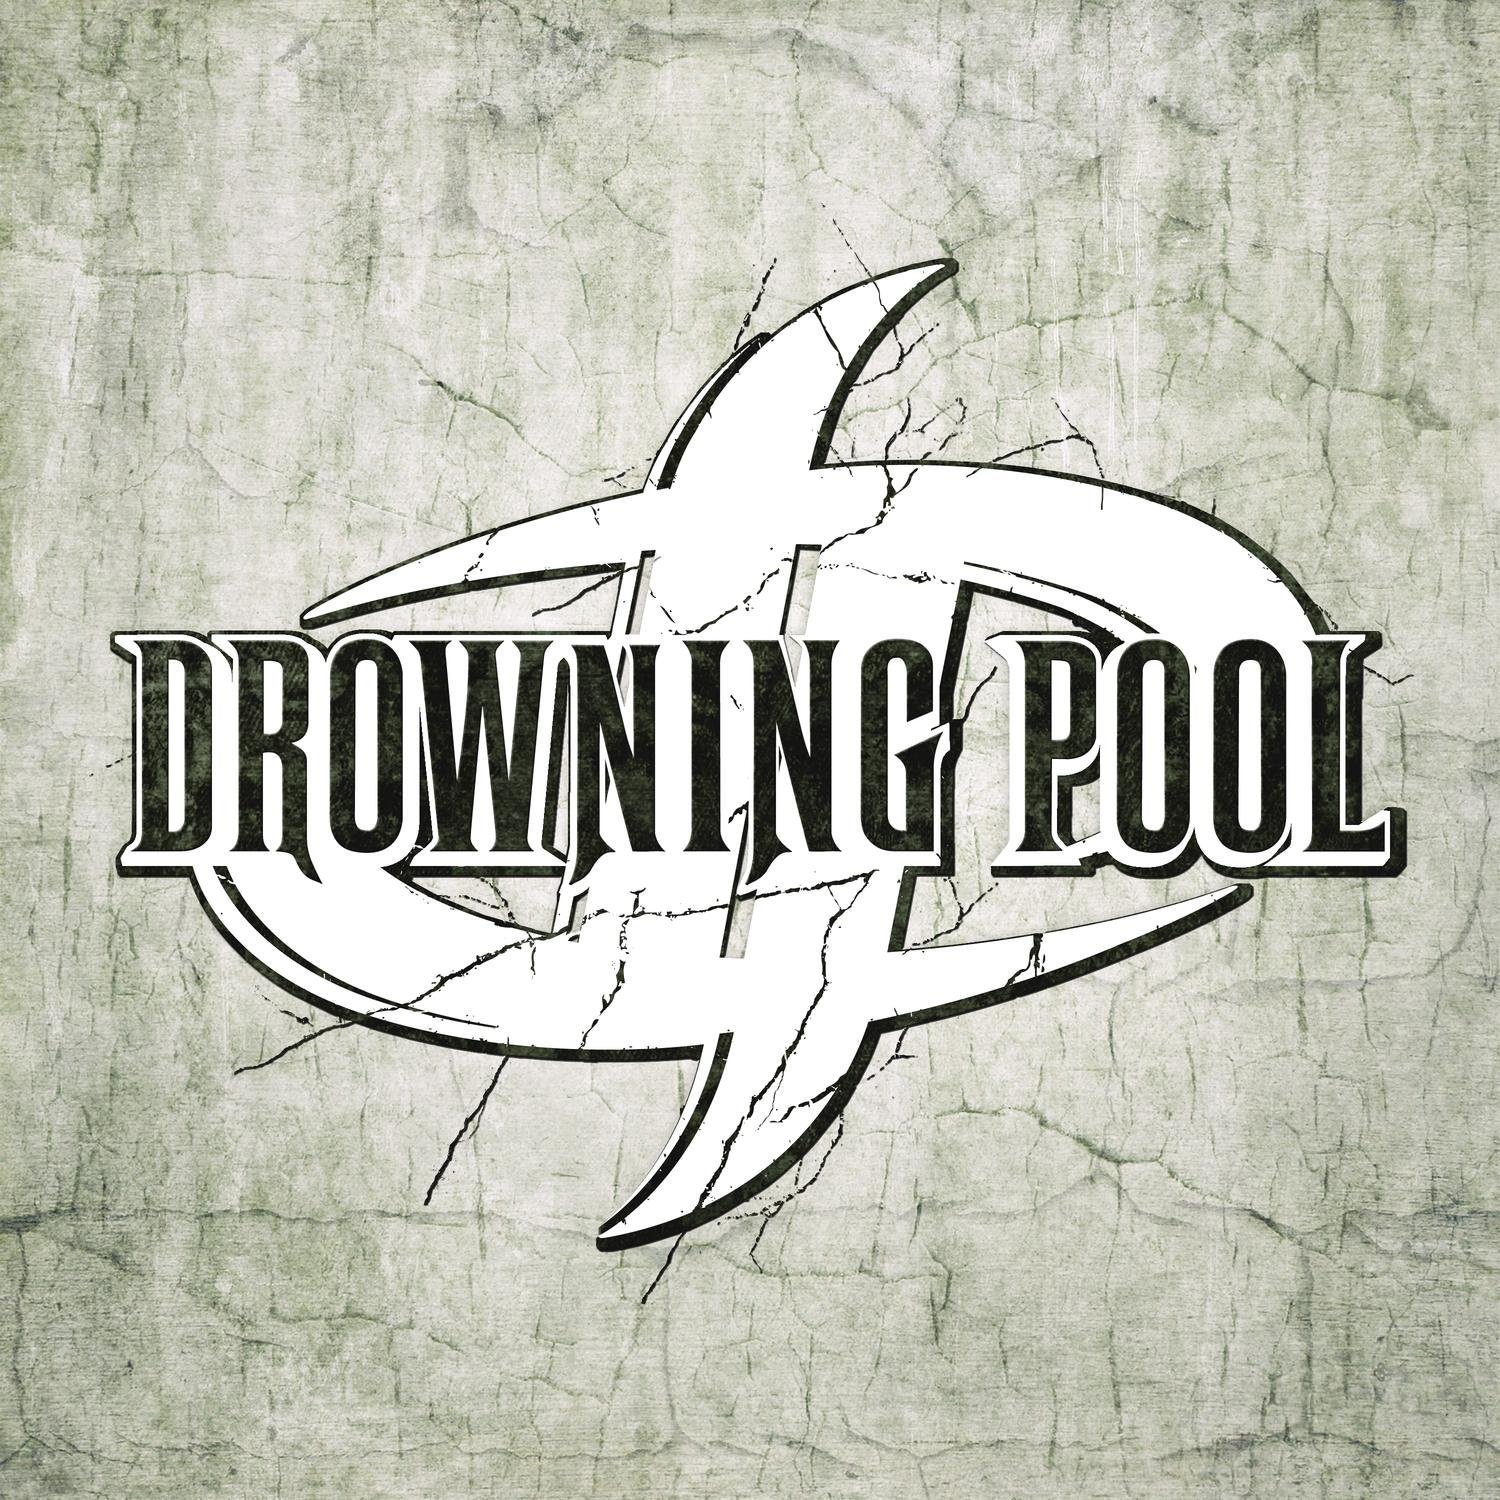 Drowning Pool HD wallpapers, Desktop wallpaper - most viewed